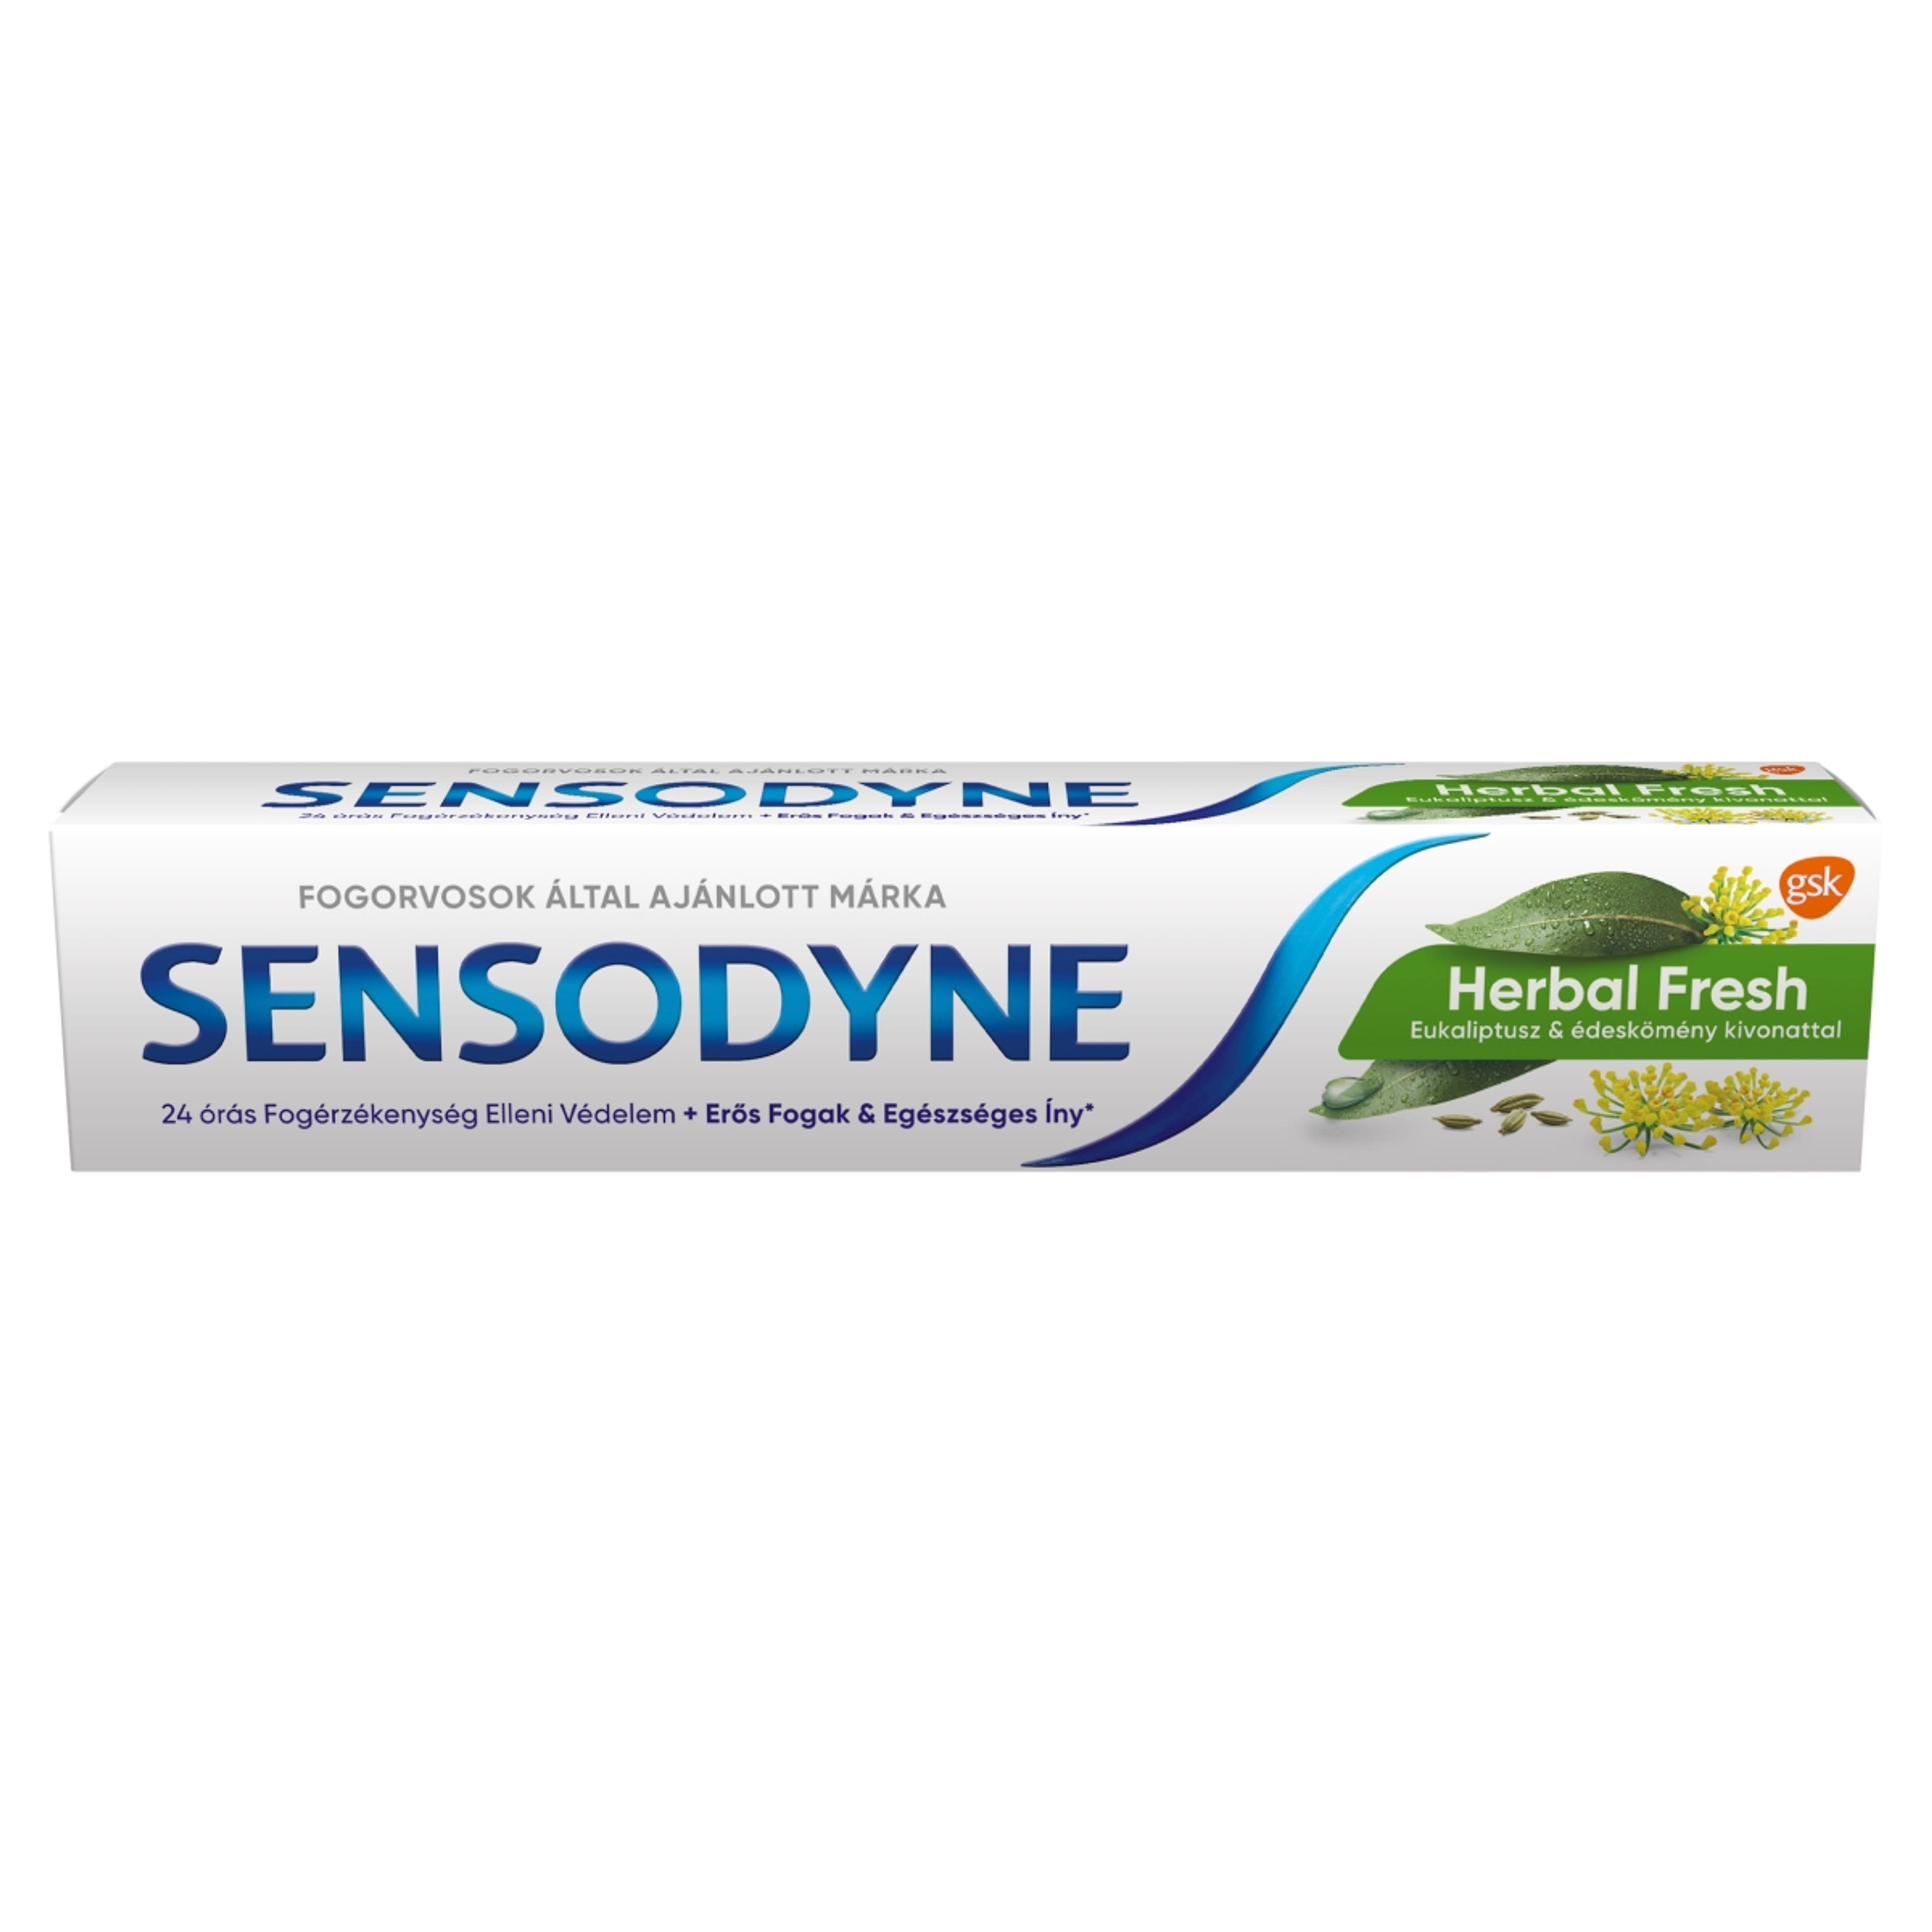 Sensodyne Herbal Fresh fogkrém - 75 ml-1